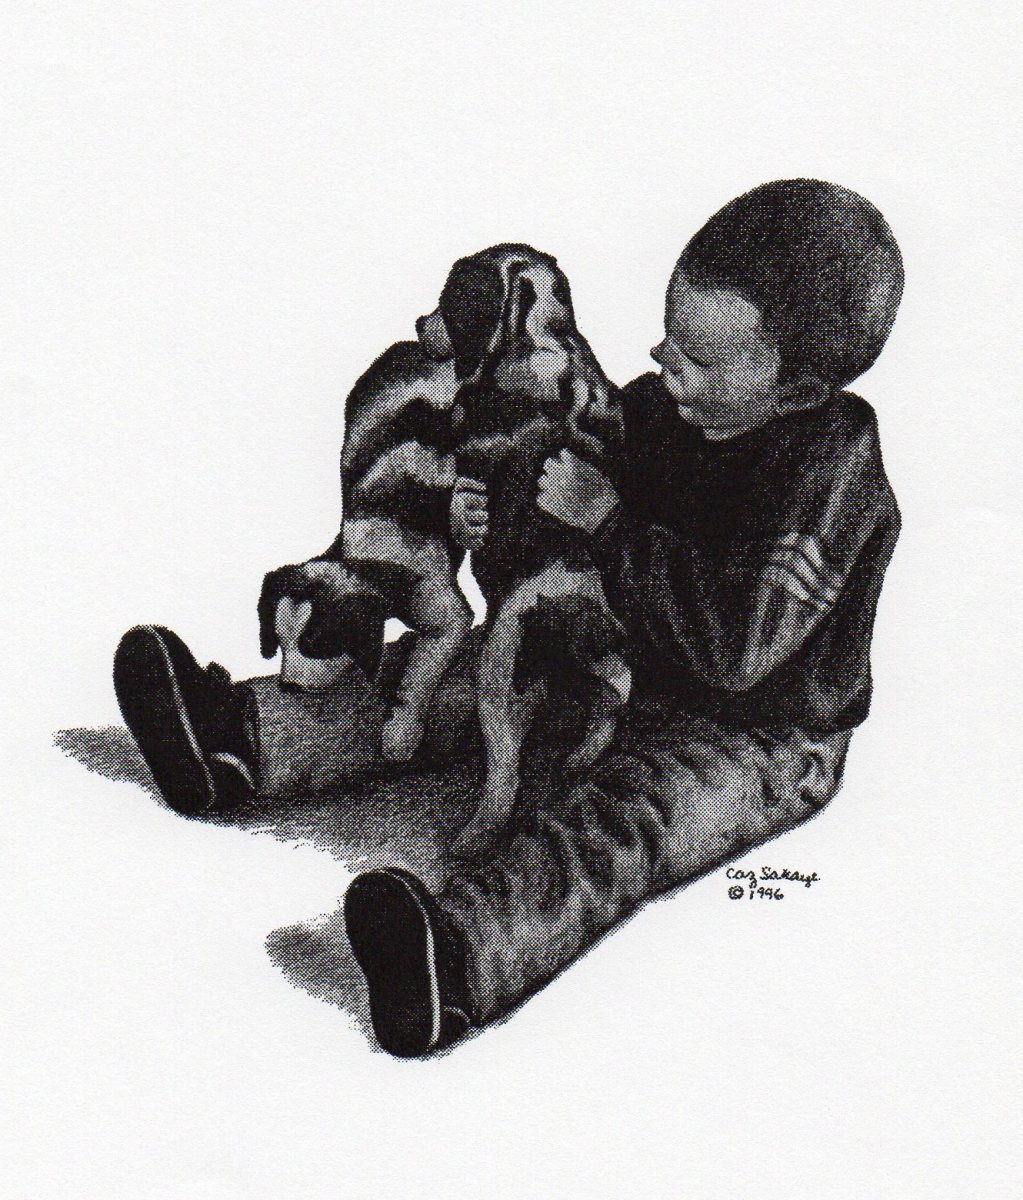 Ben with Puppies by Carol Zirkle 